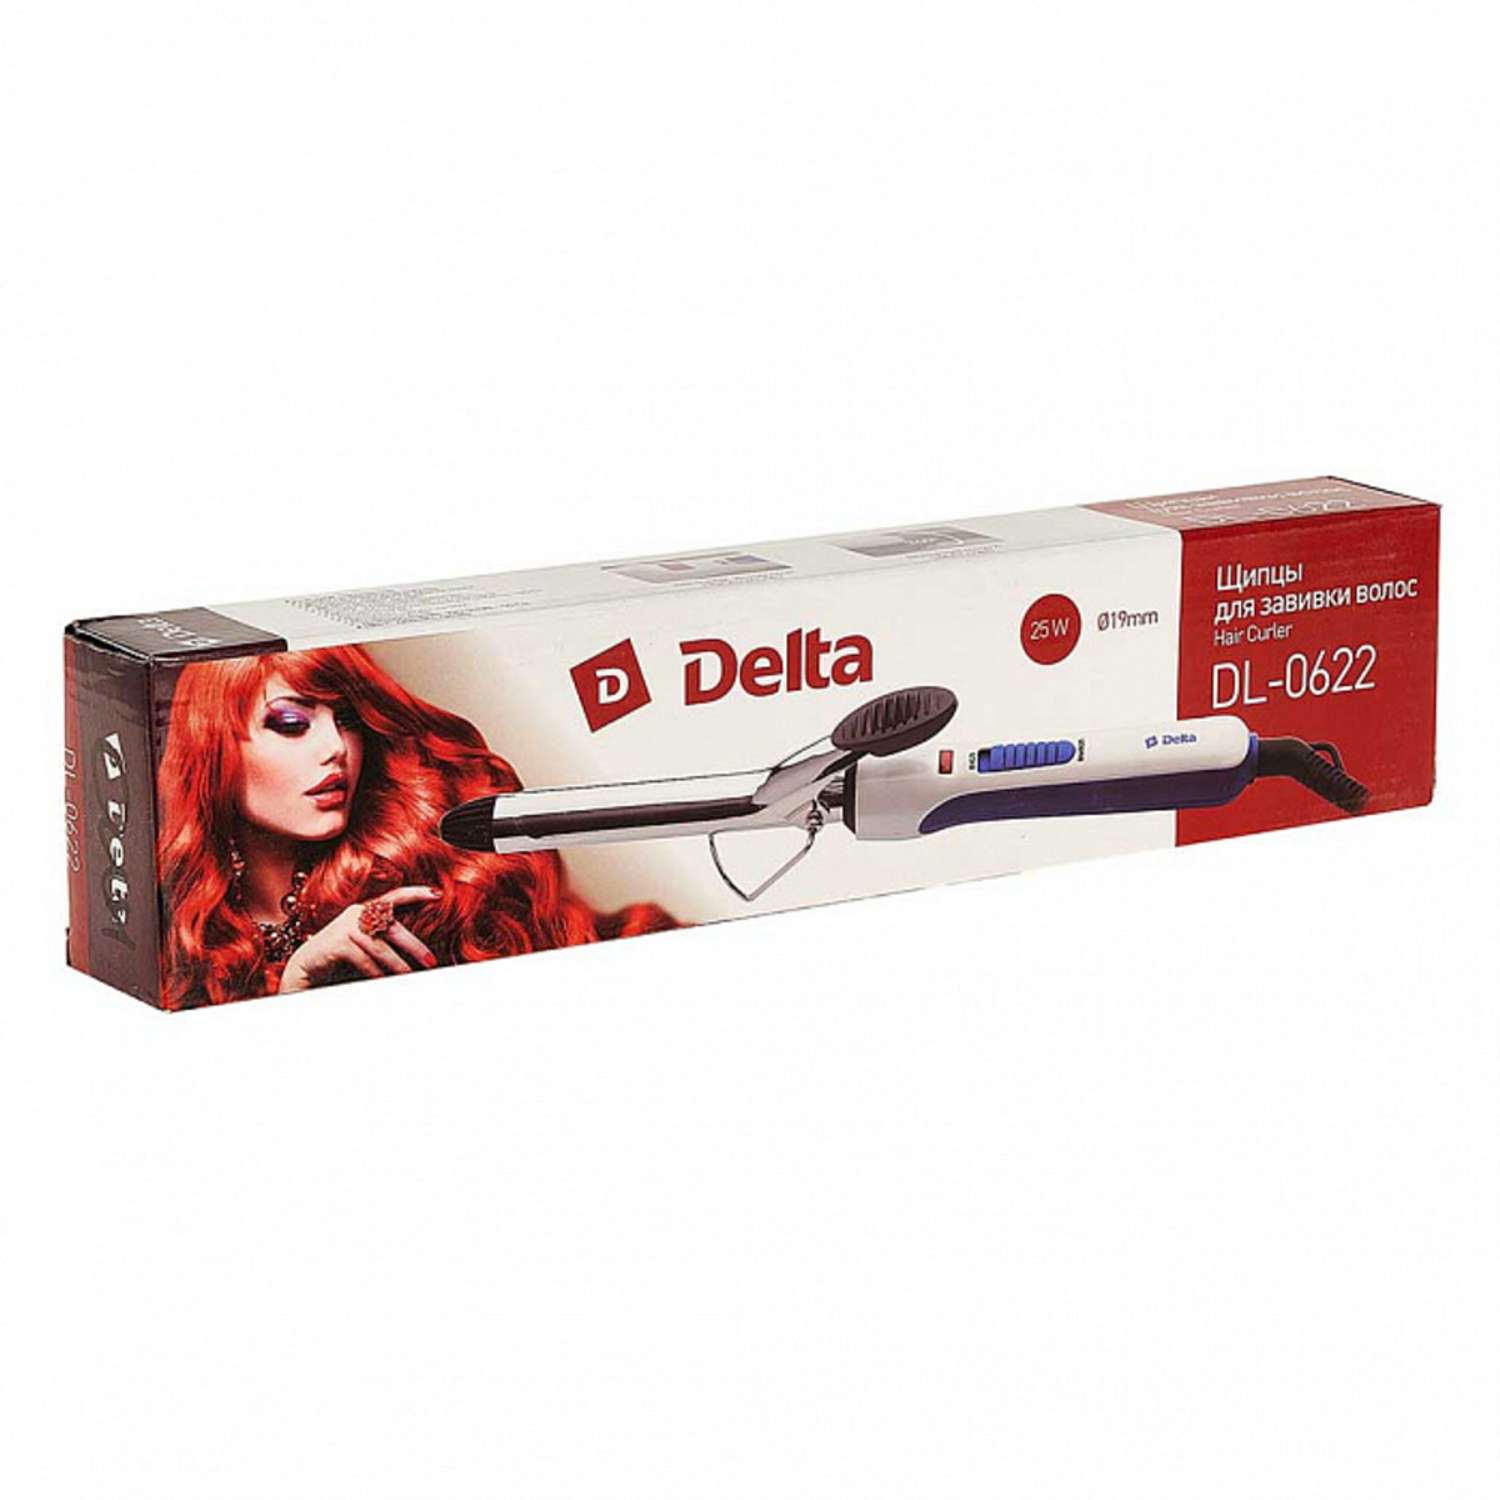 Стайлер для завивки волос Delta DL-0622 белый с синим 25 Вт - фото 4